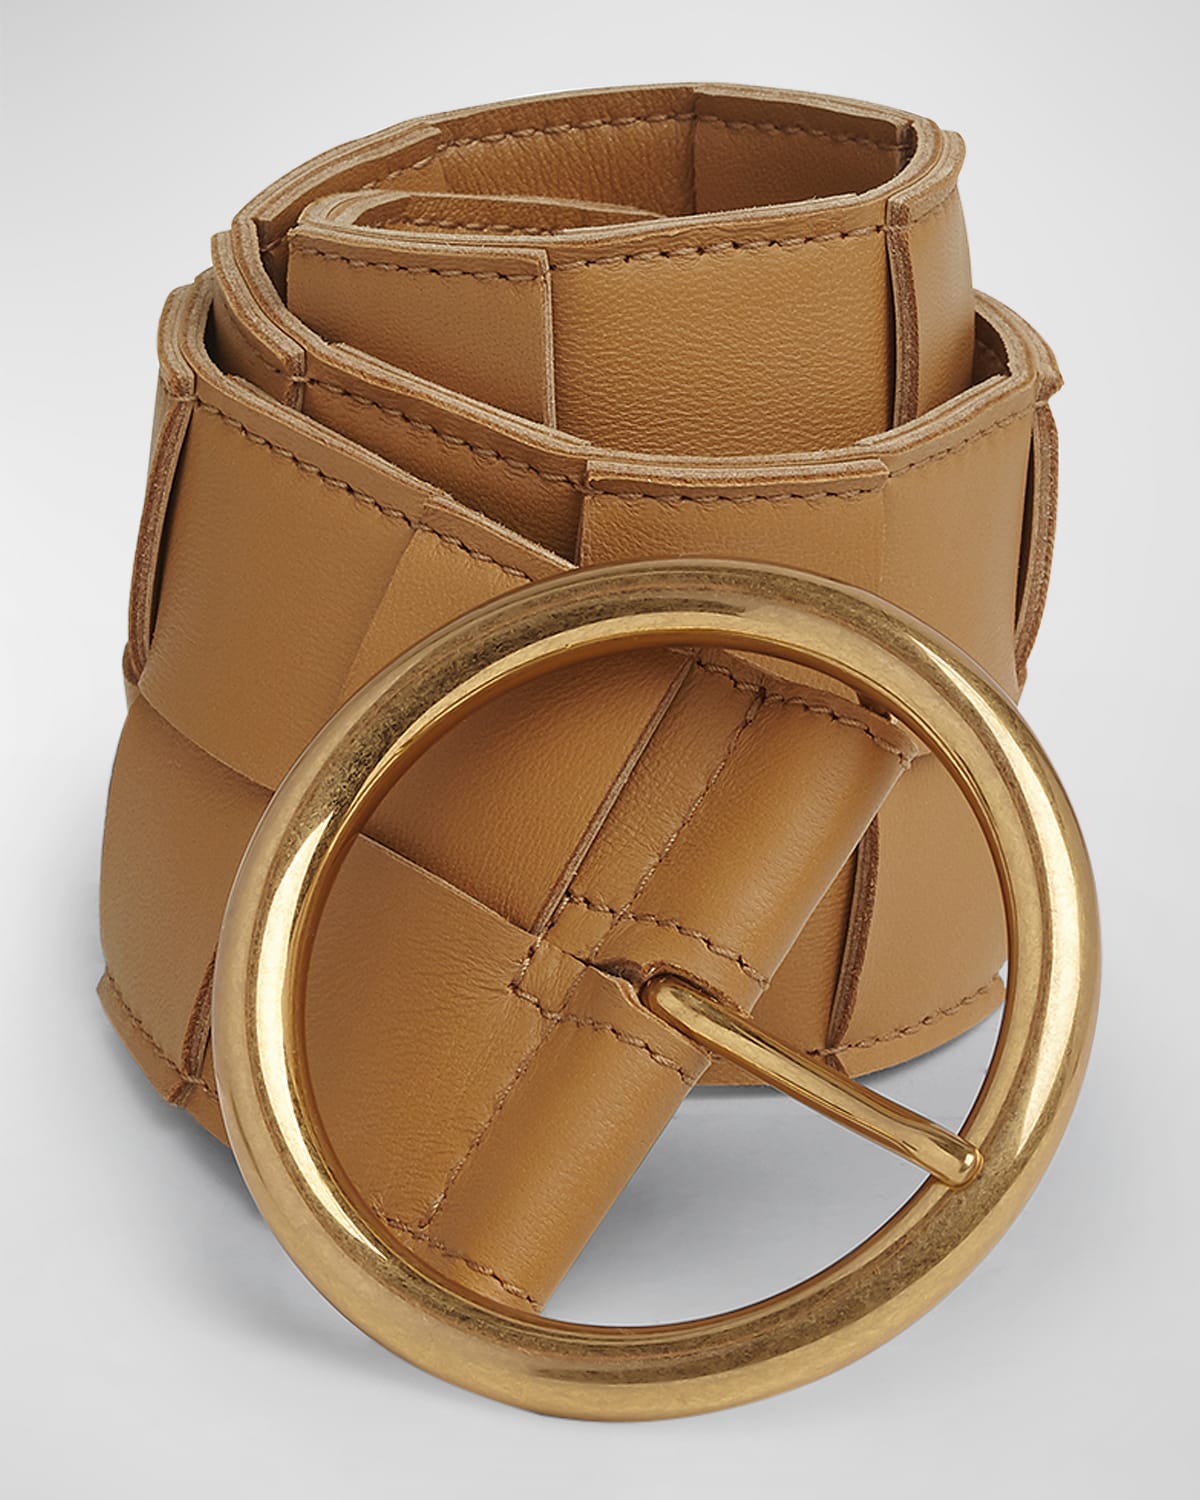 Intreccio Napa Leather Belt